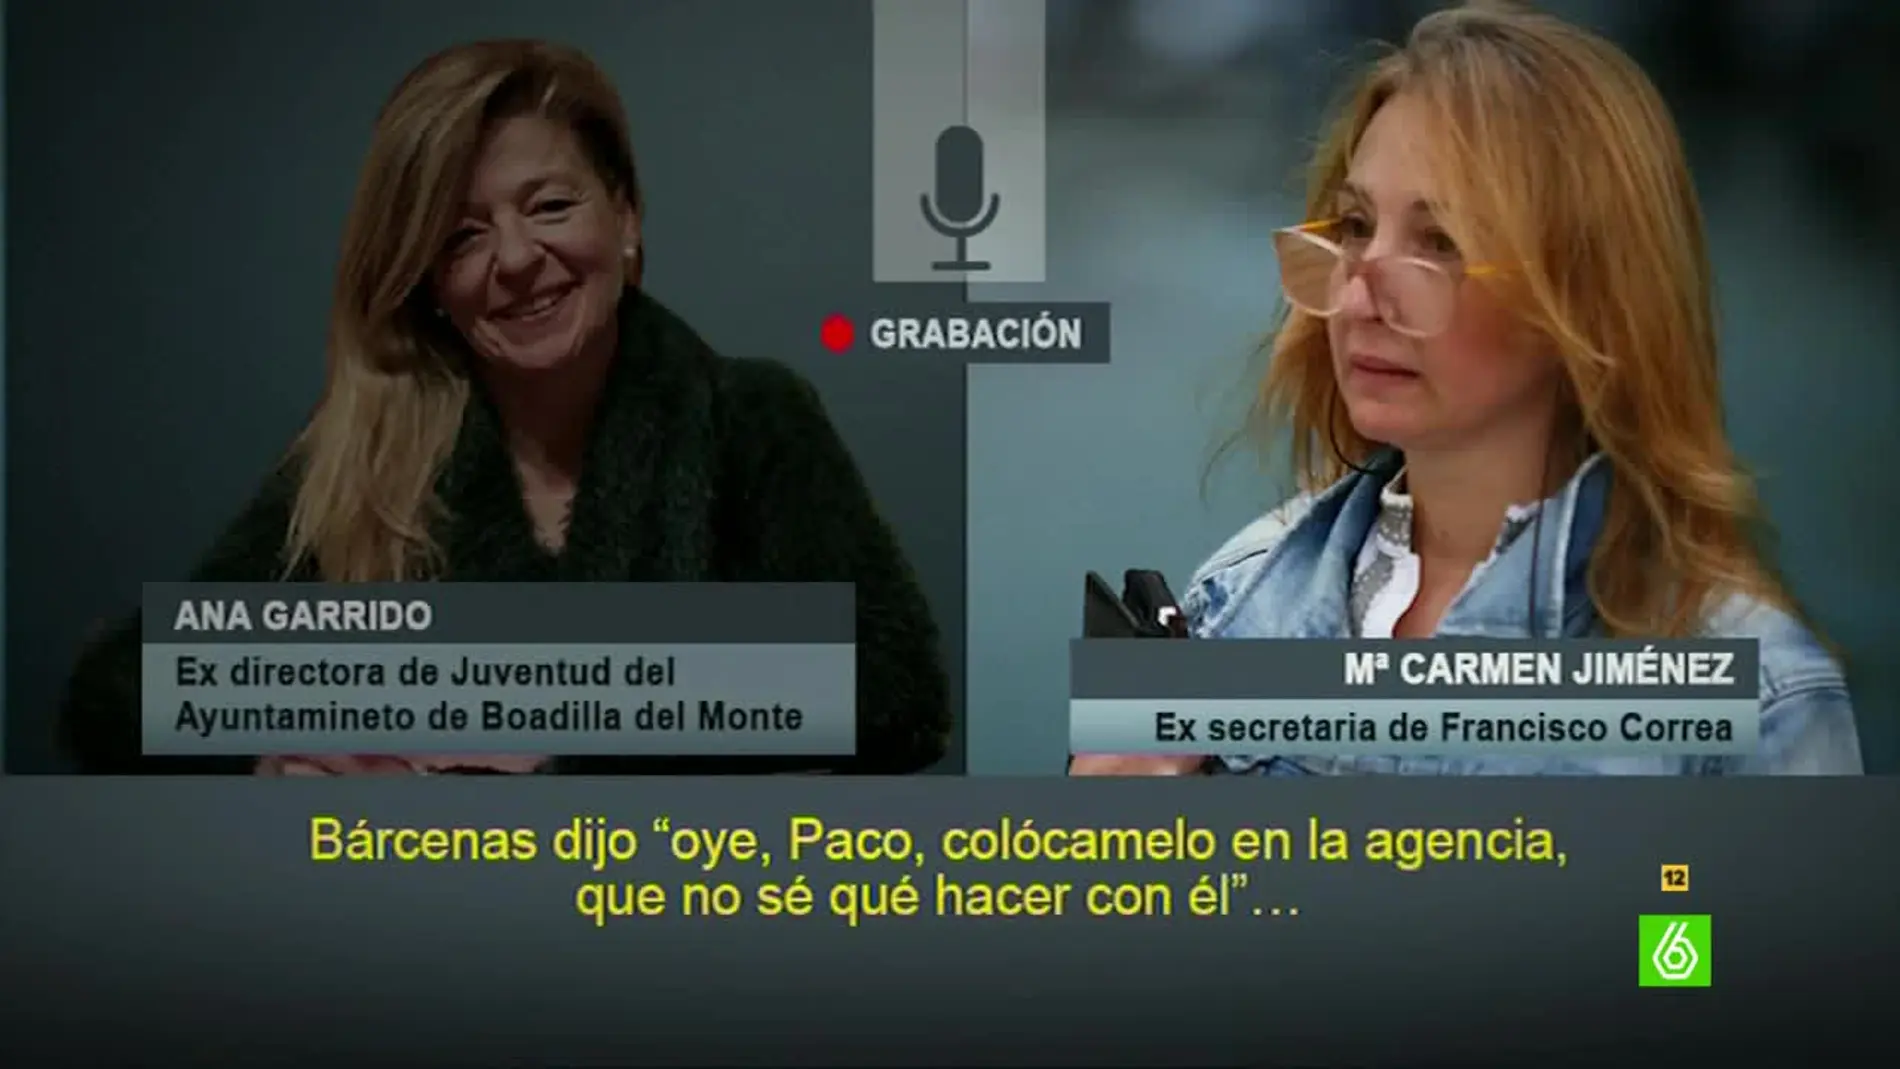 Conversación entre Ana Garrido y Mª Carmen Jiménez